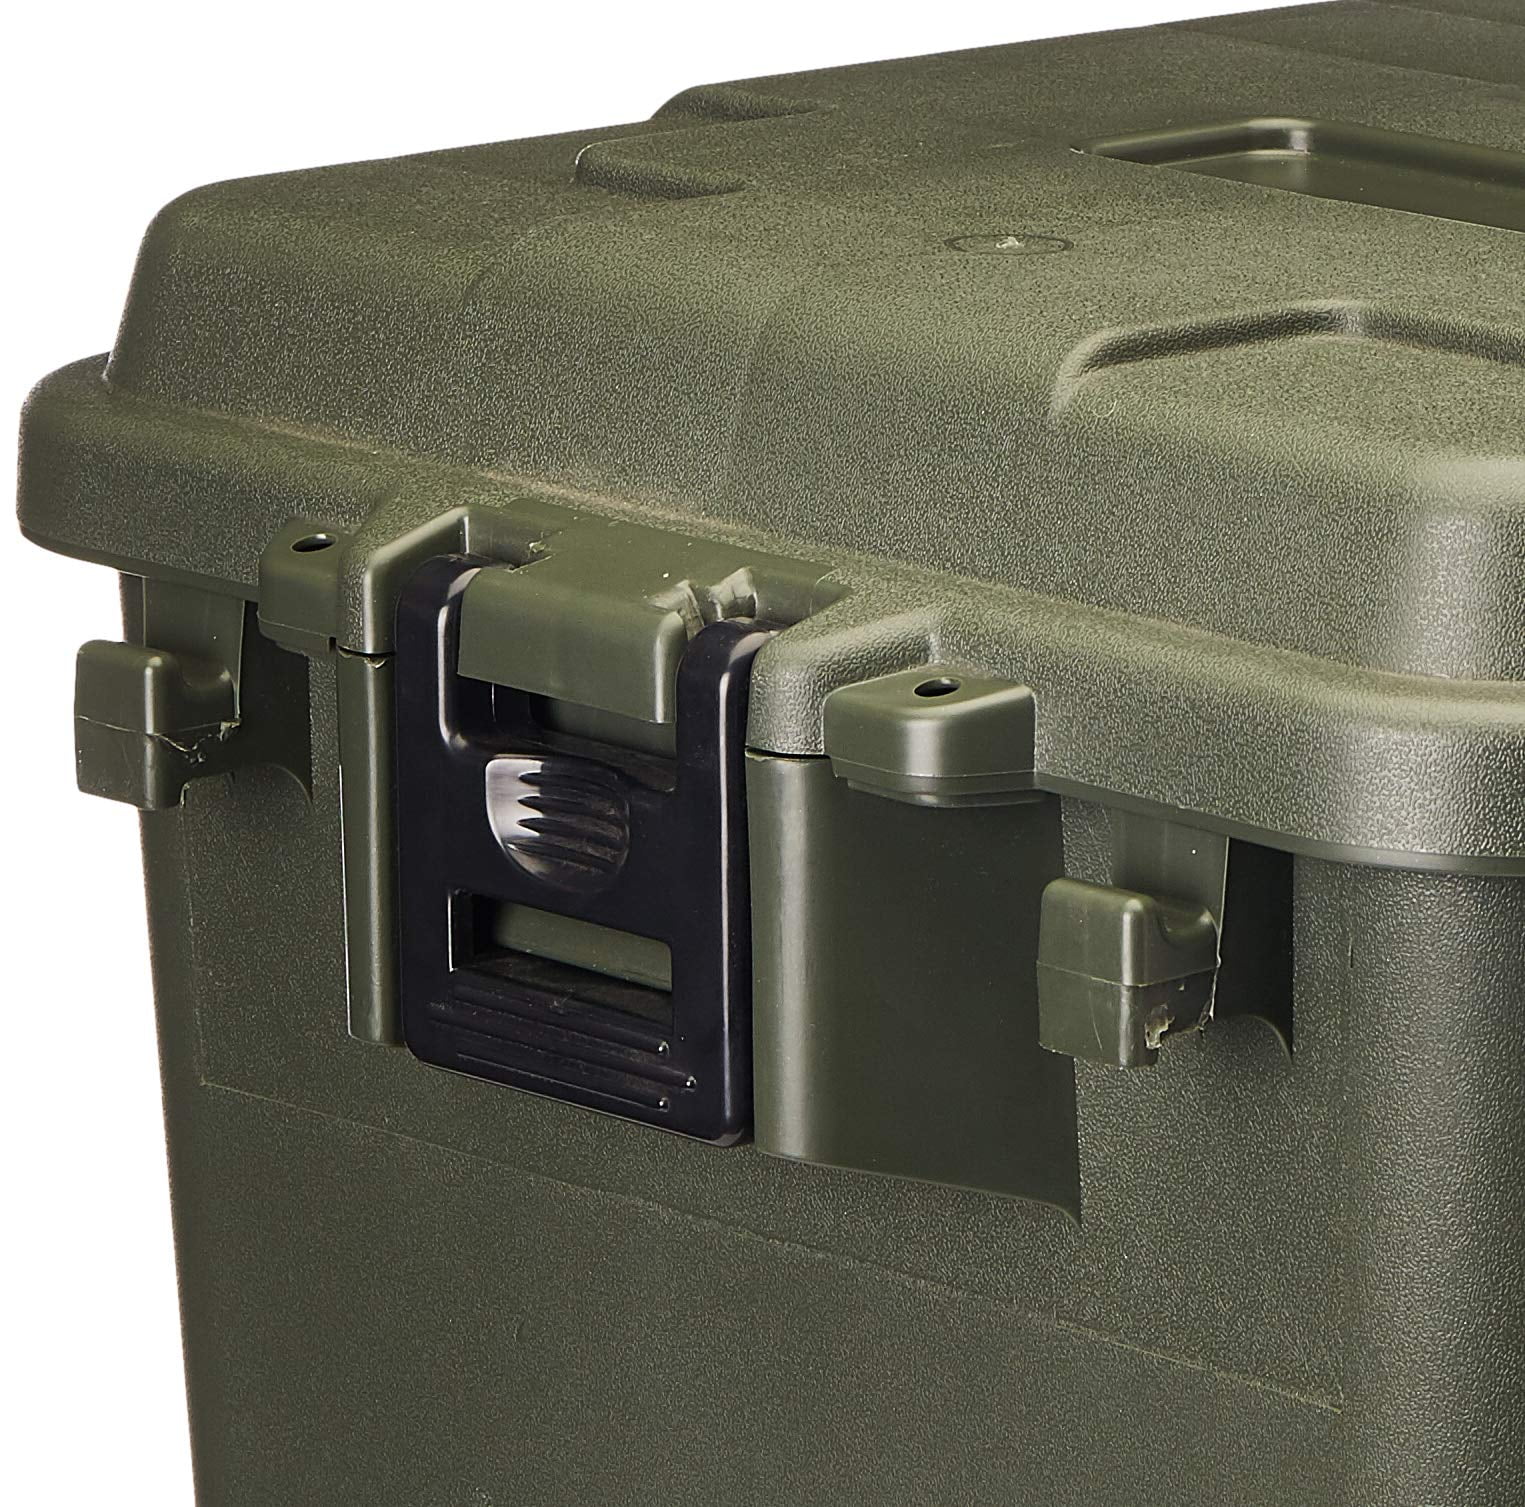 Plano Sportsman Trunk, OD Green, Small, 56-Quart Lockable Storage Box 